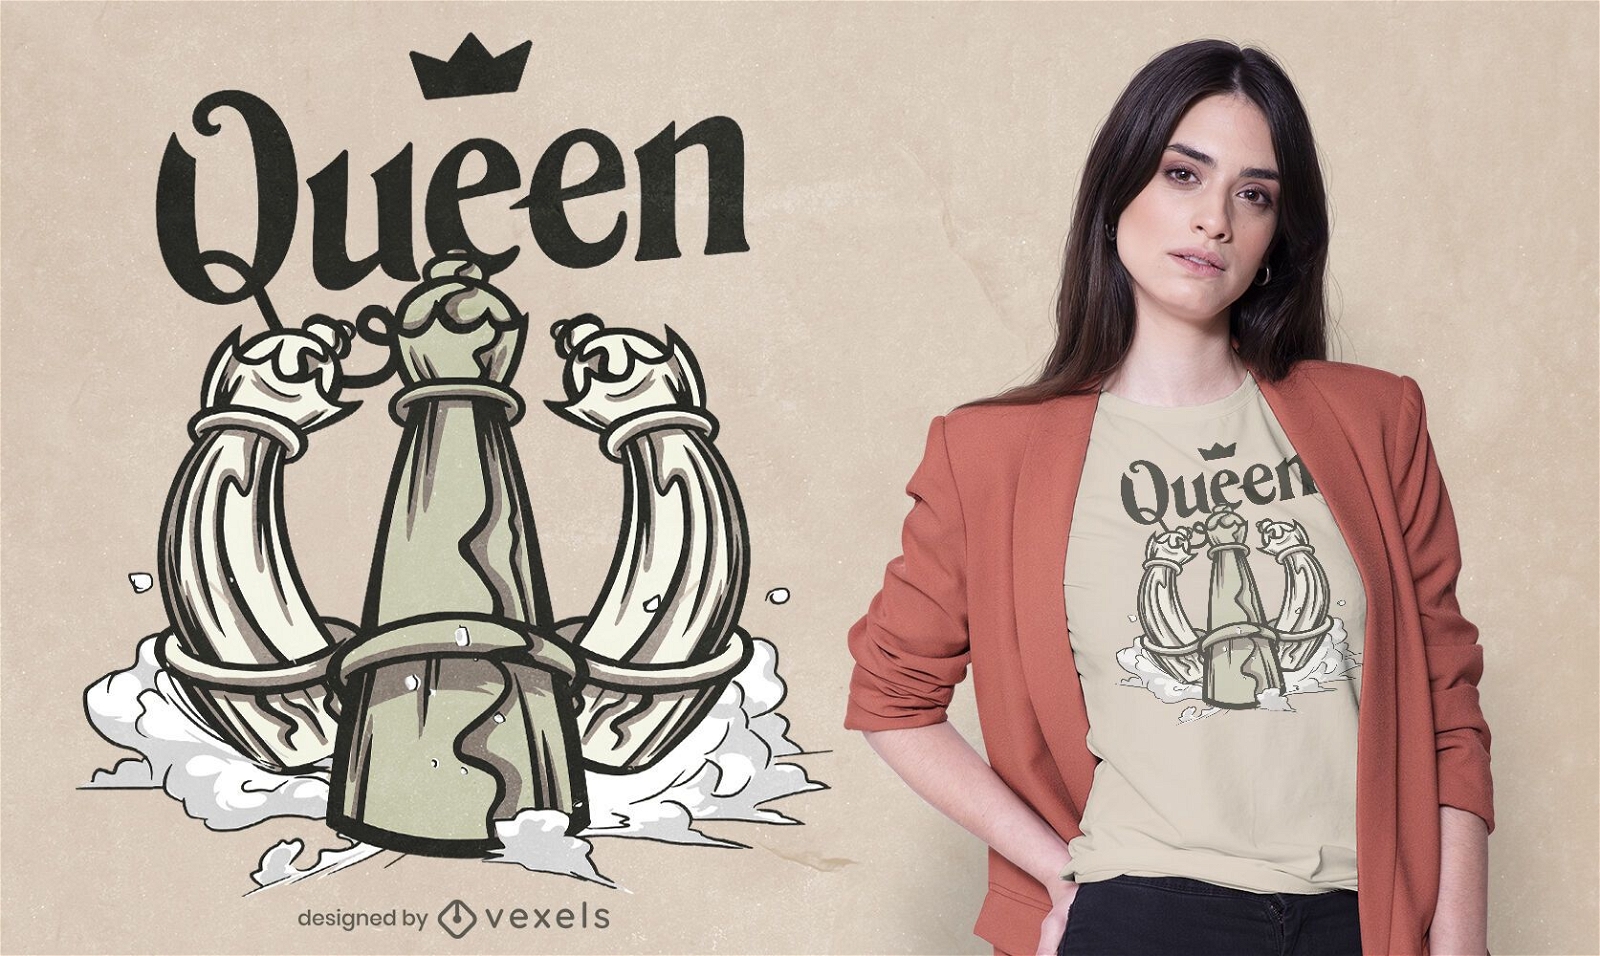 Chess queen t-shirt design